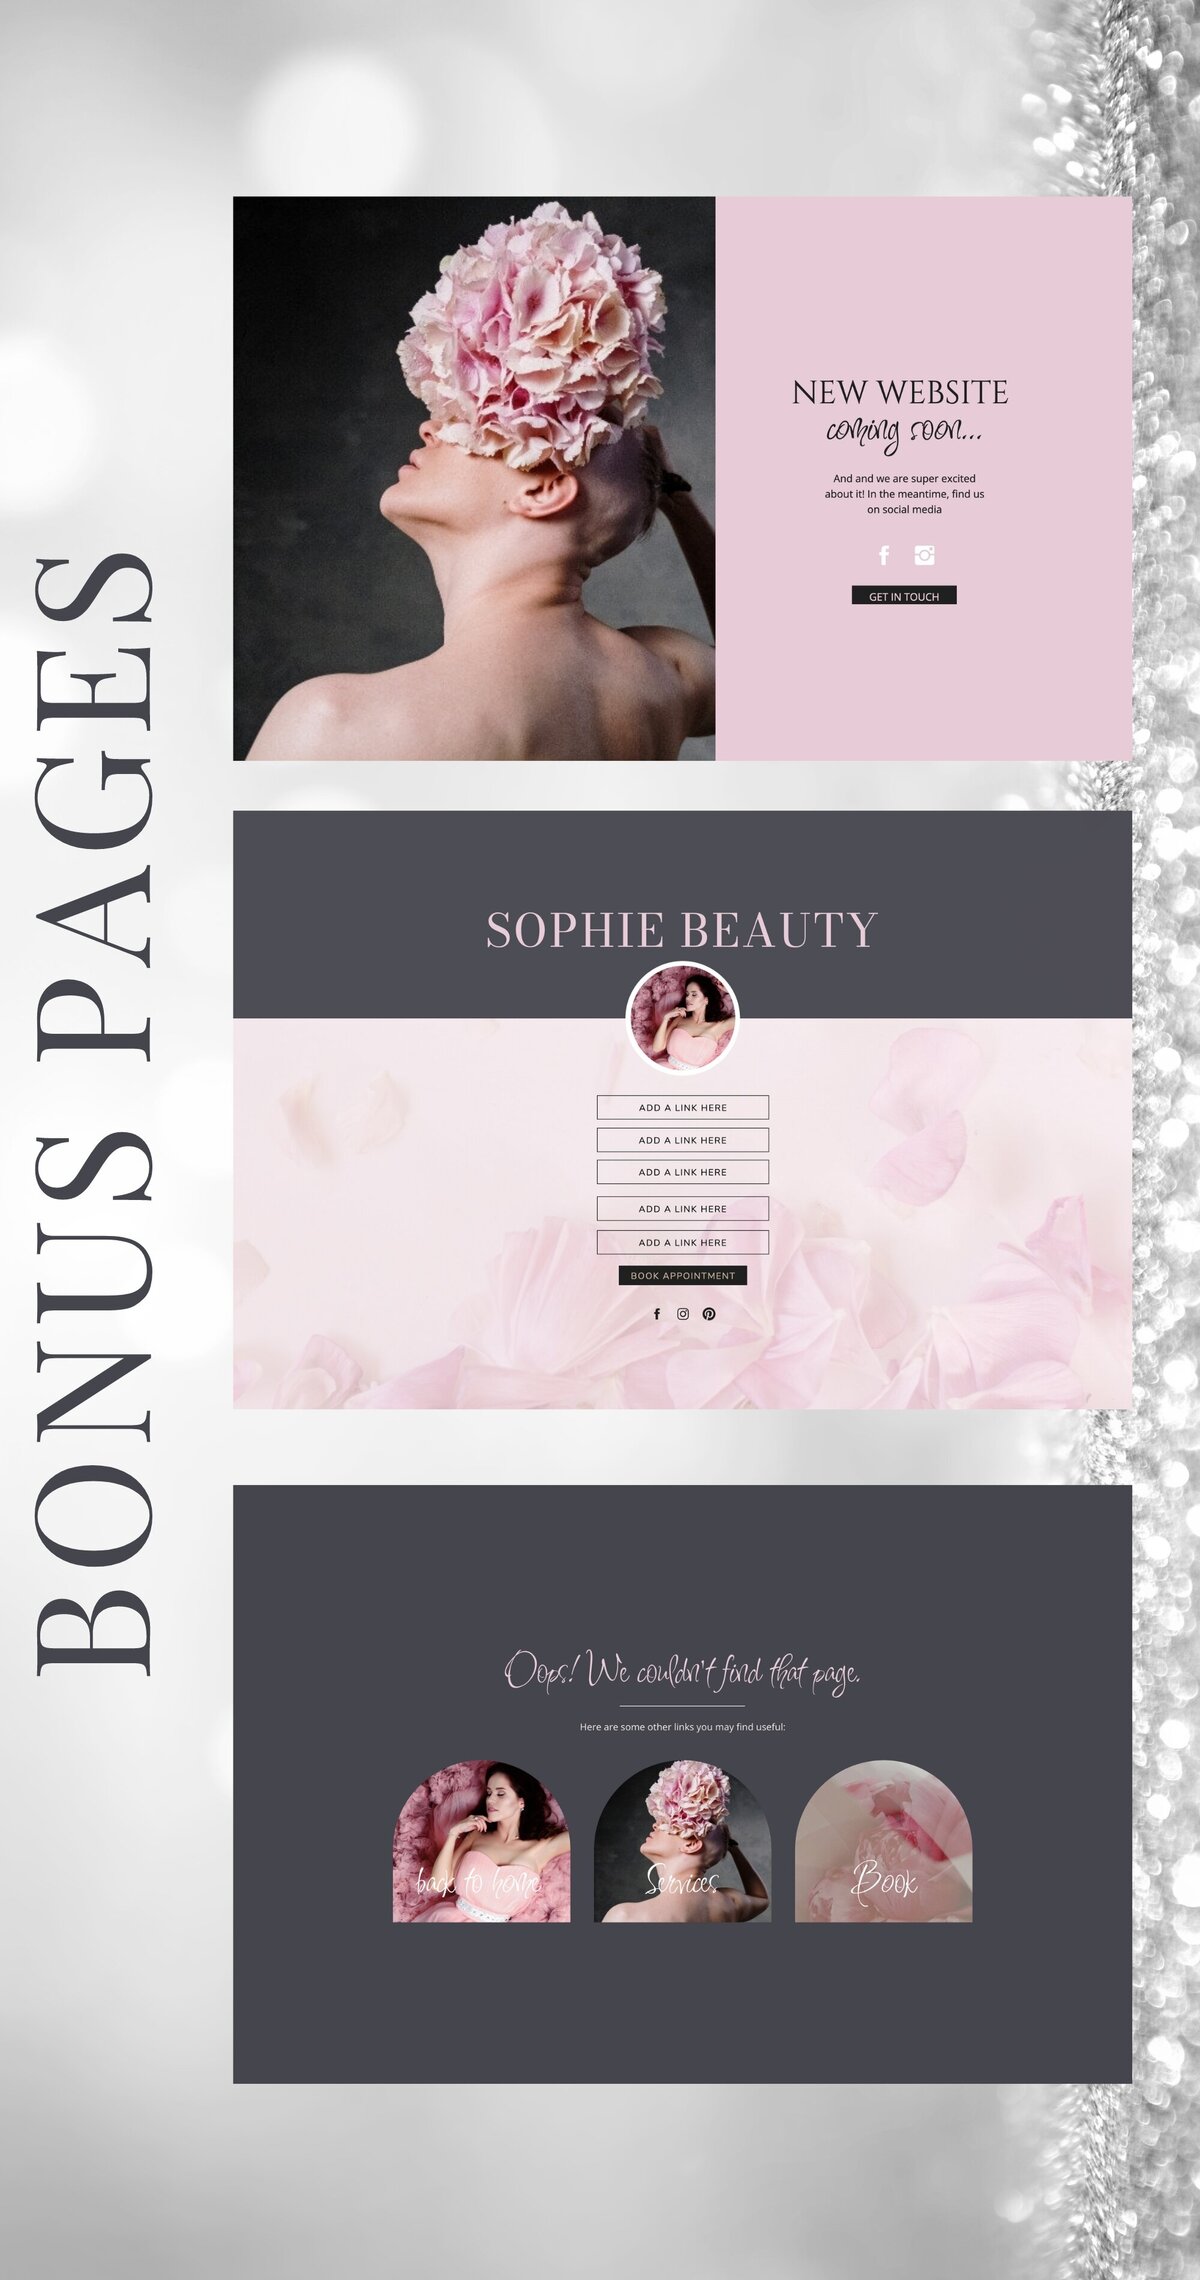 Sophie-beauty-bonus-pages